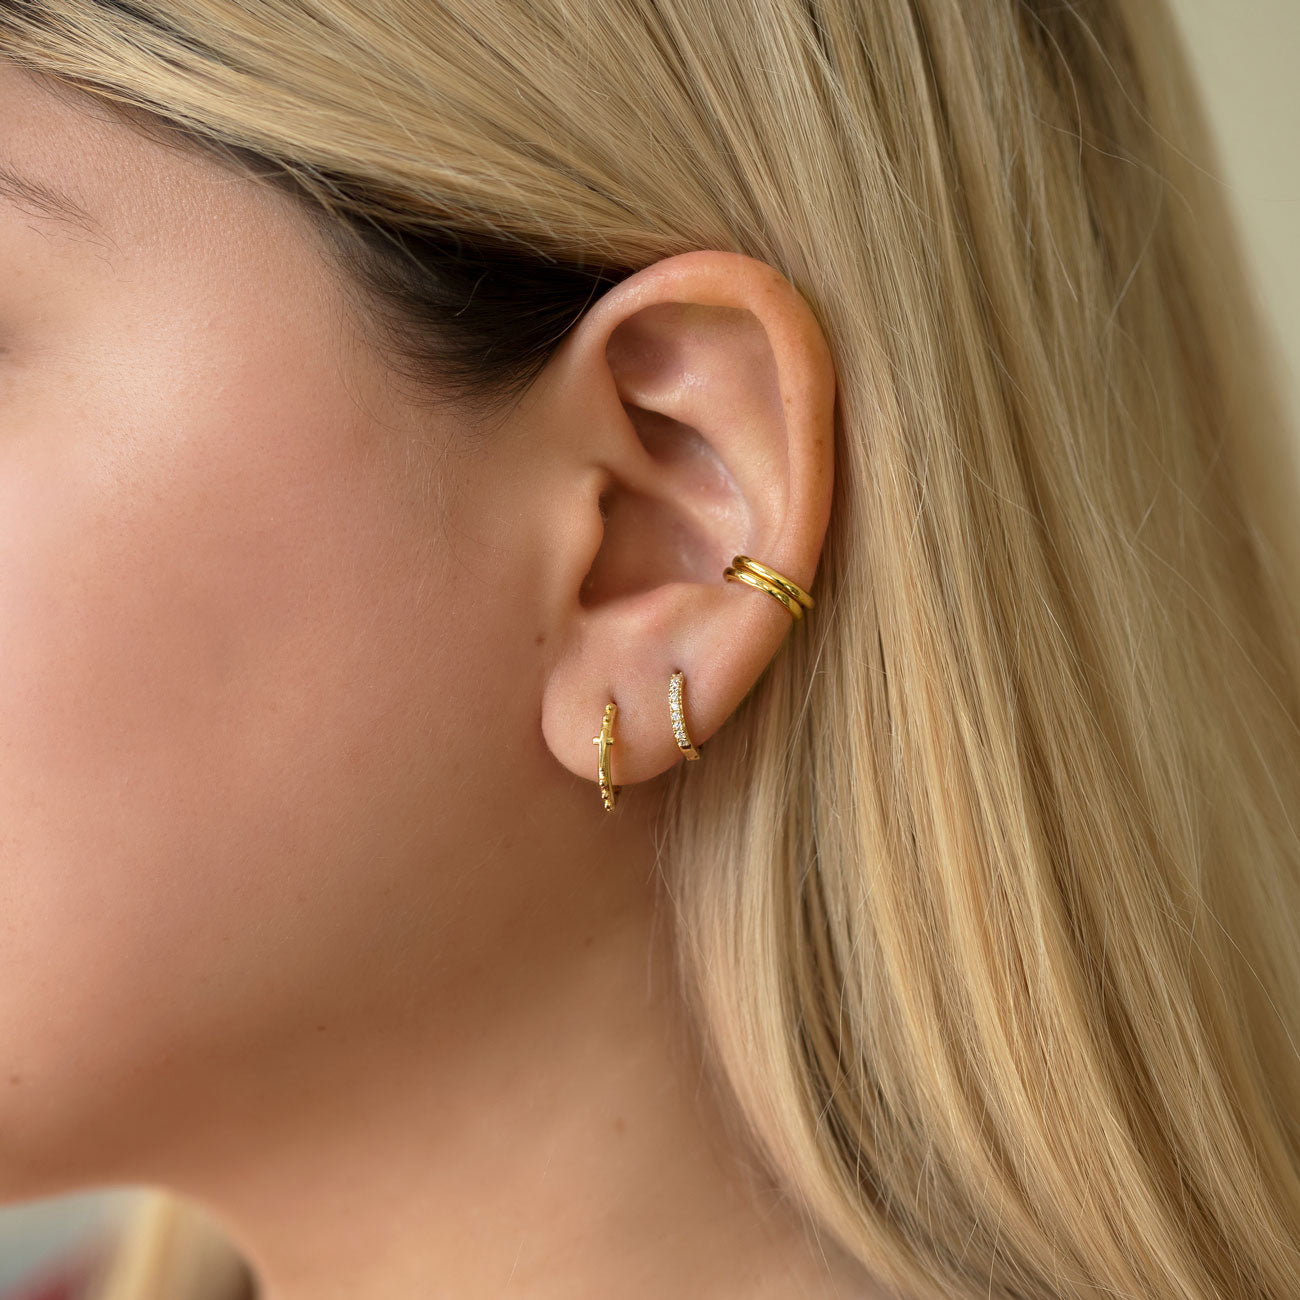 Second Piercing Earrings: Buy Latest Second Ear Piercing Designs Online